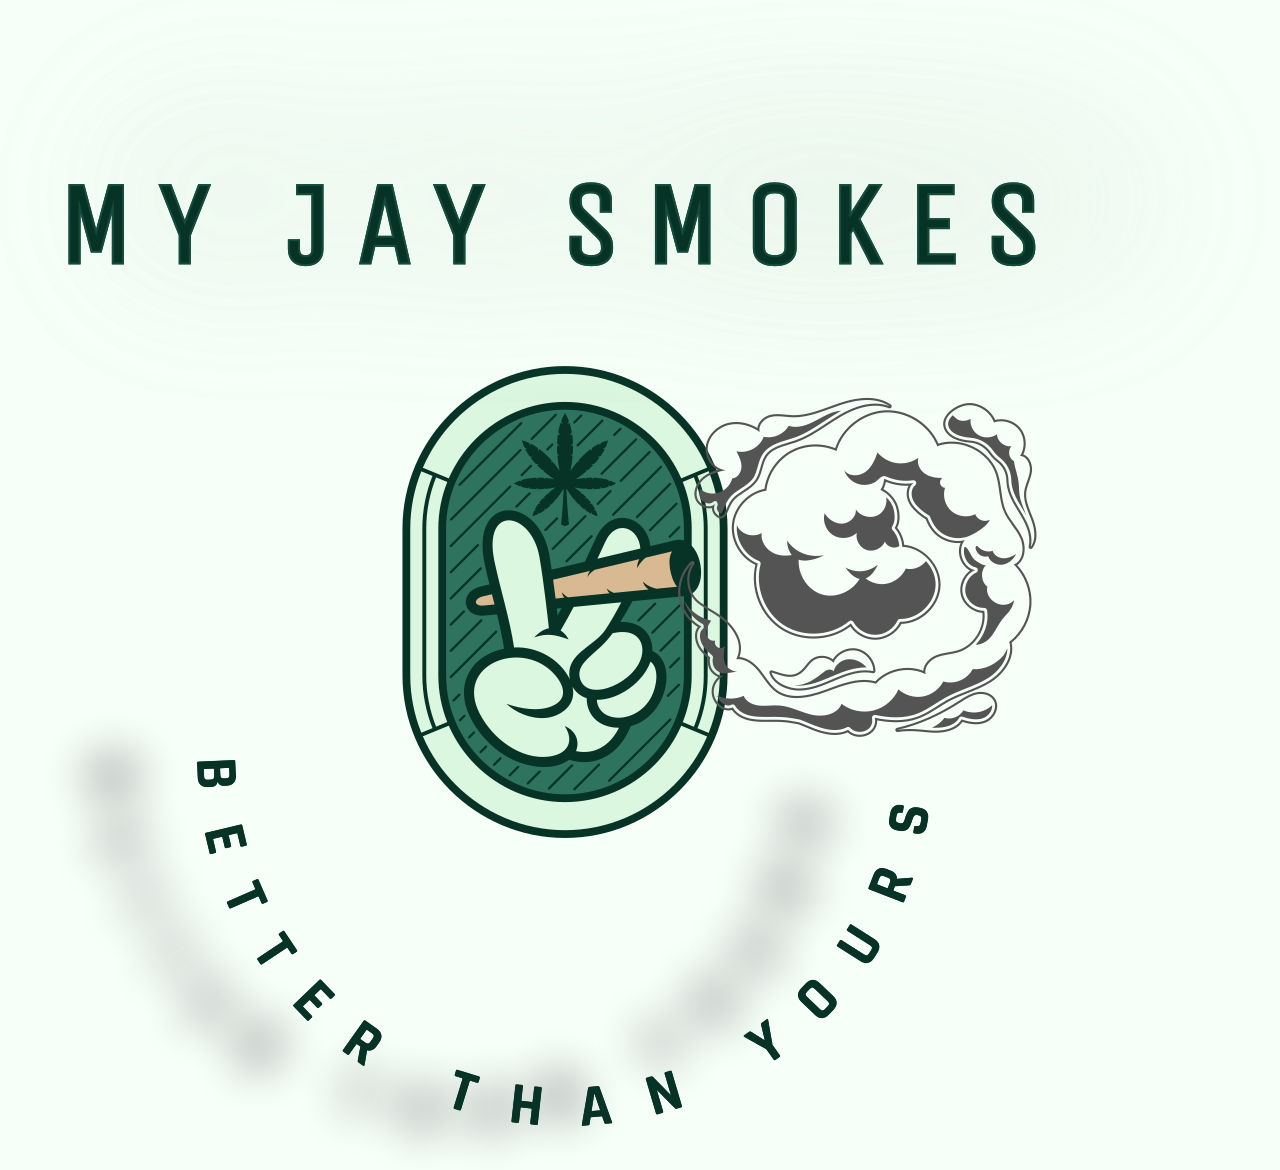 My Jay Smokes's logo